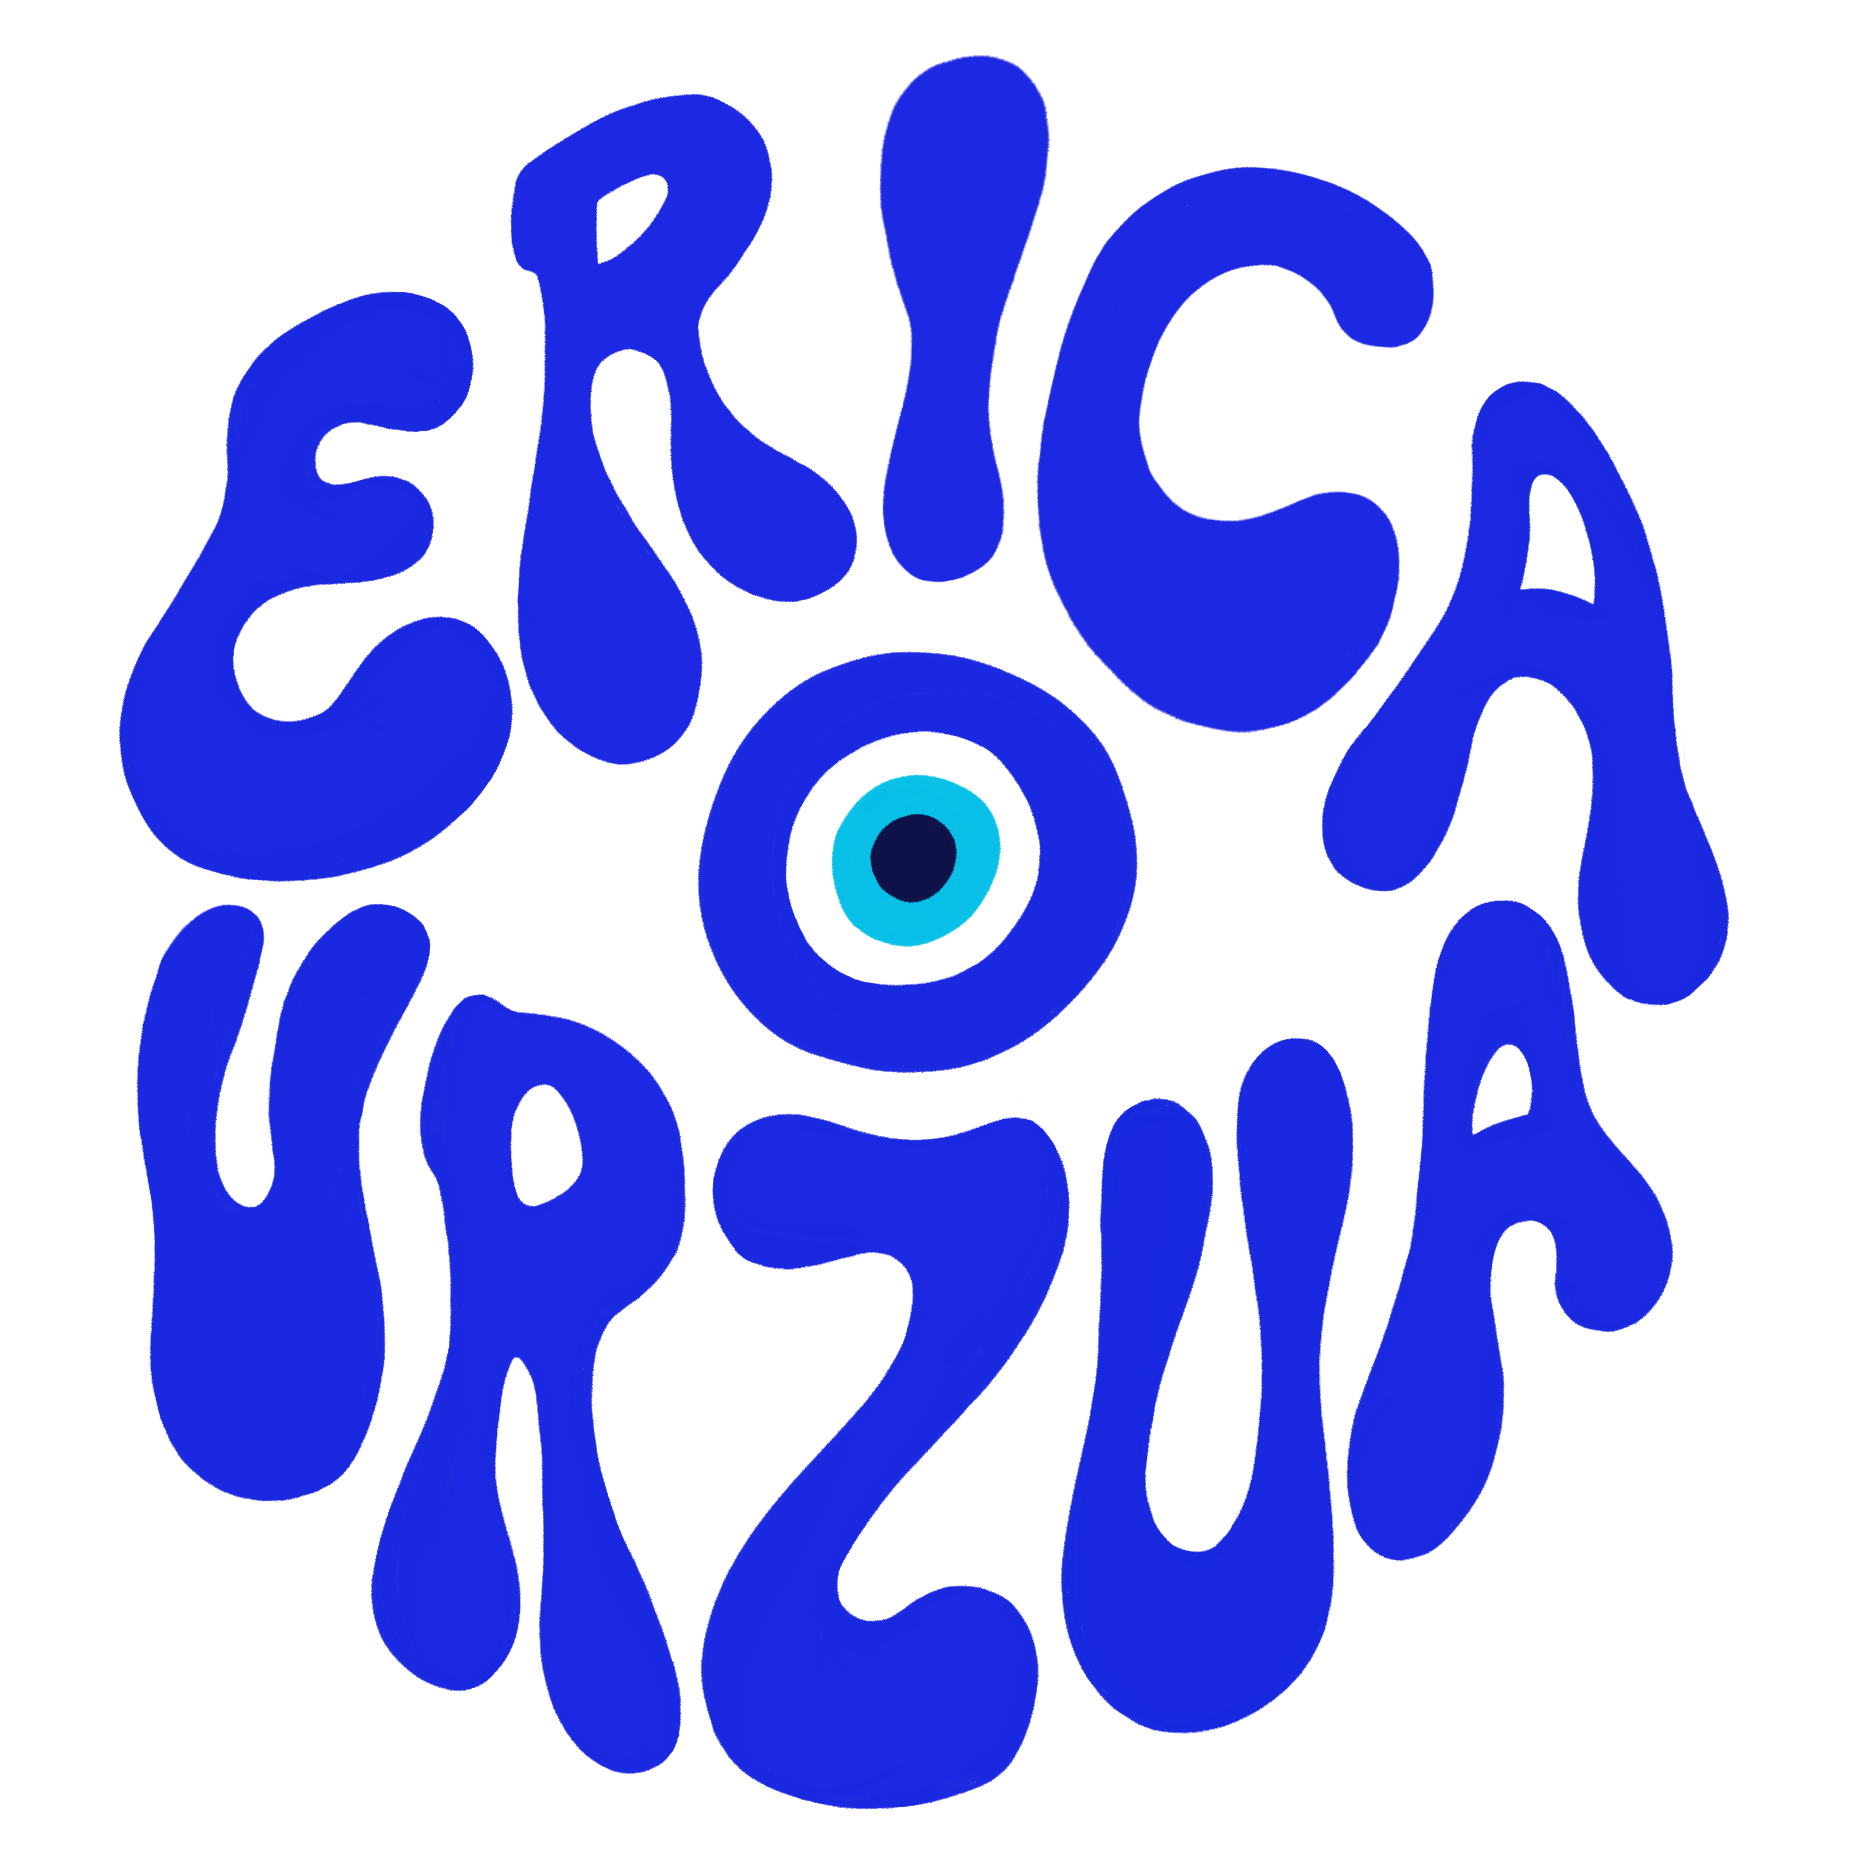 Erica URZUA